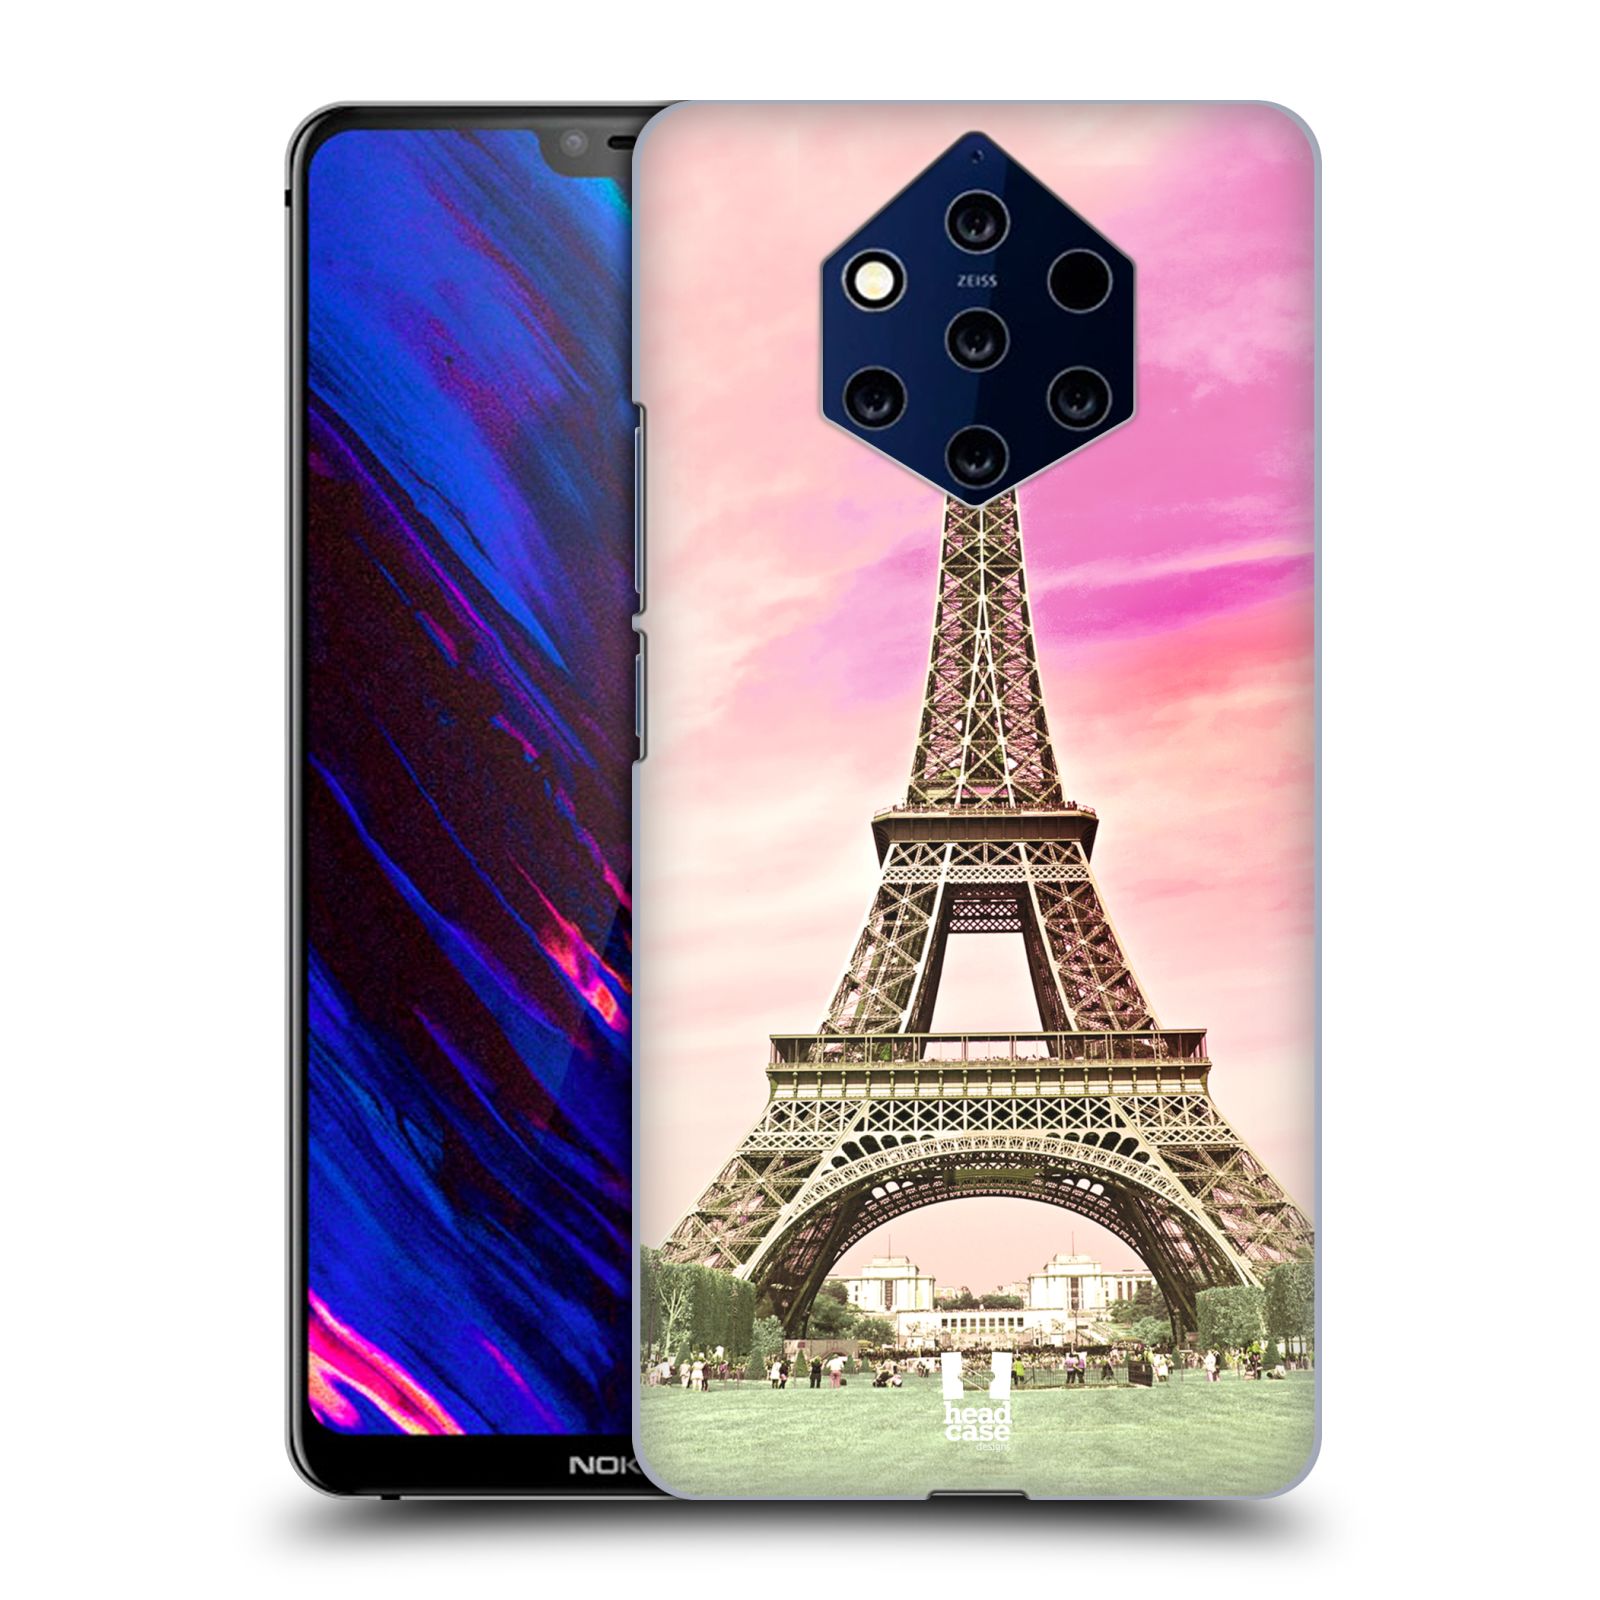 Pouzdro na mobil NOKIA 9 PureView - HEAD CASE - historická místa Eiffelova věž Paříž